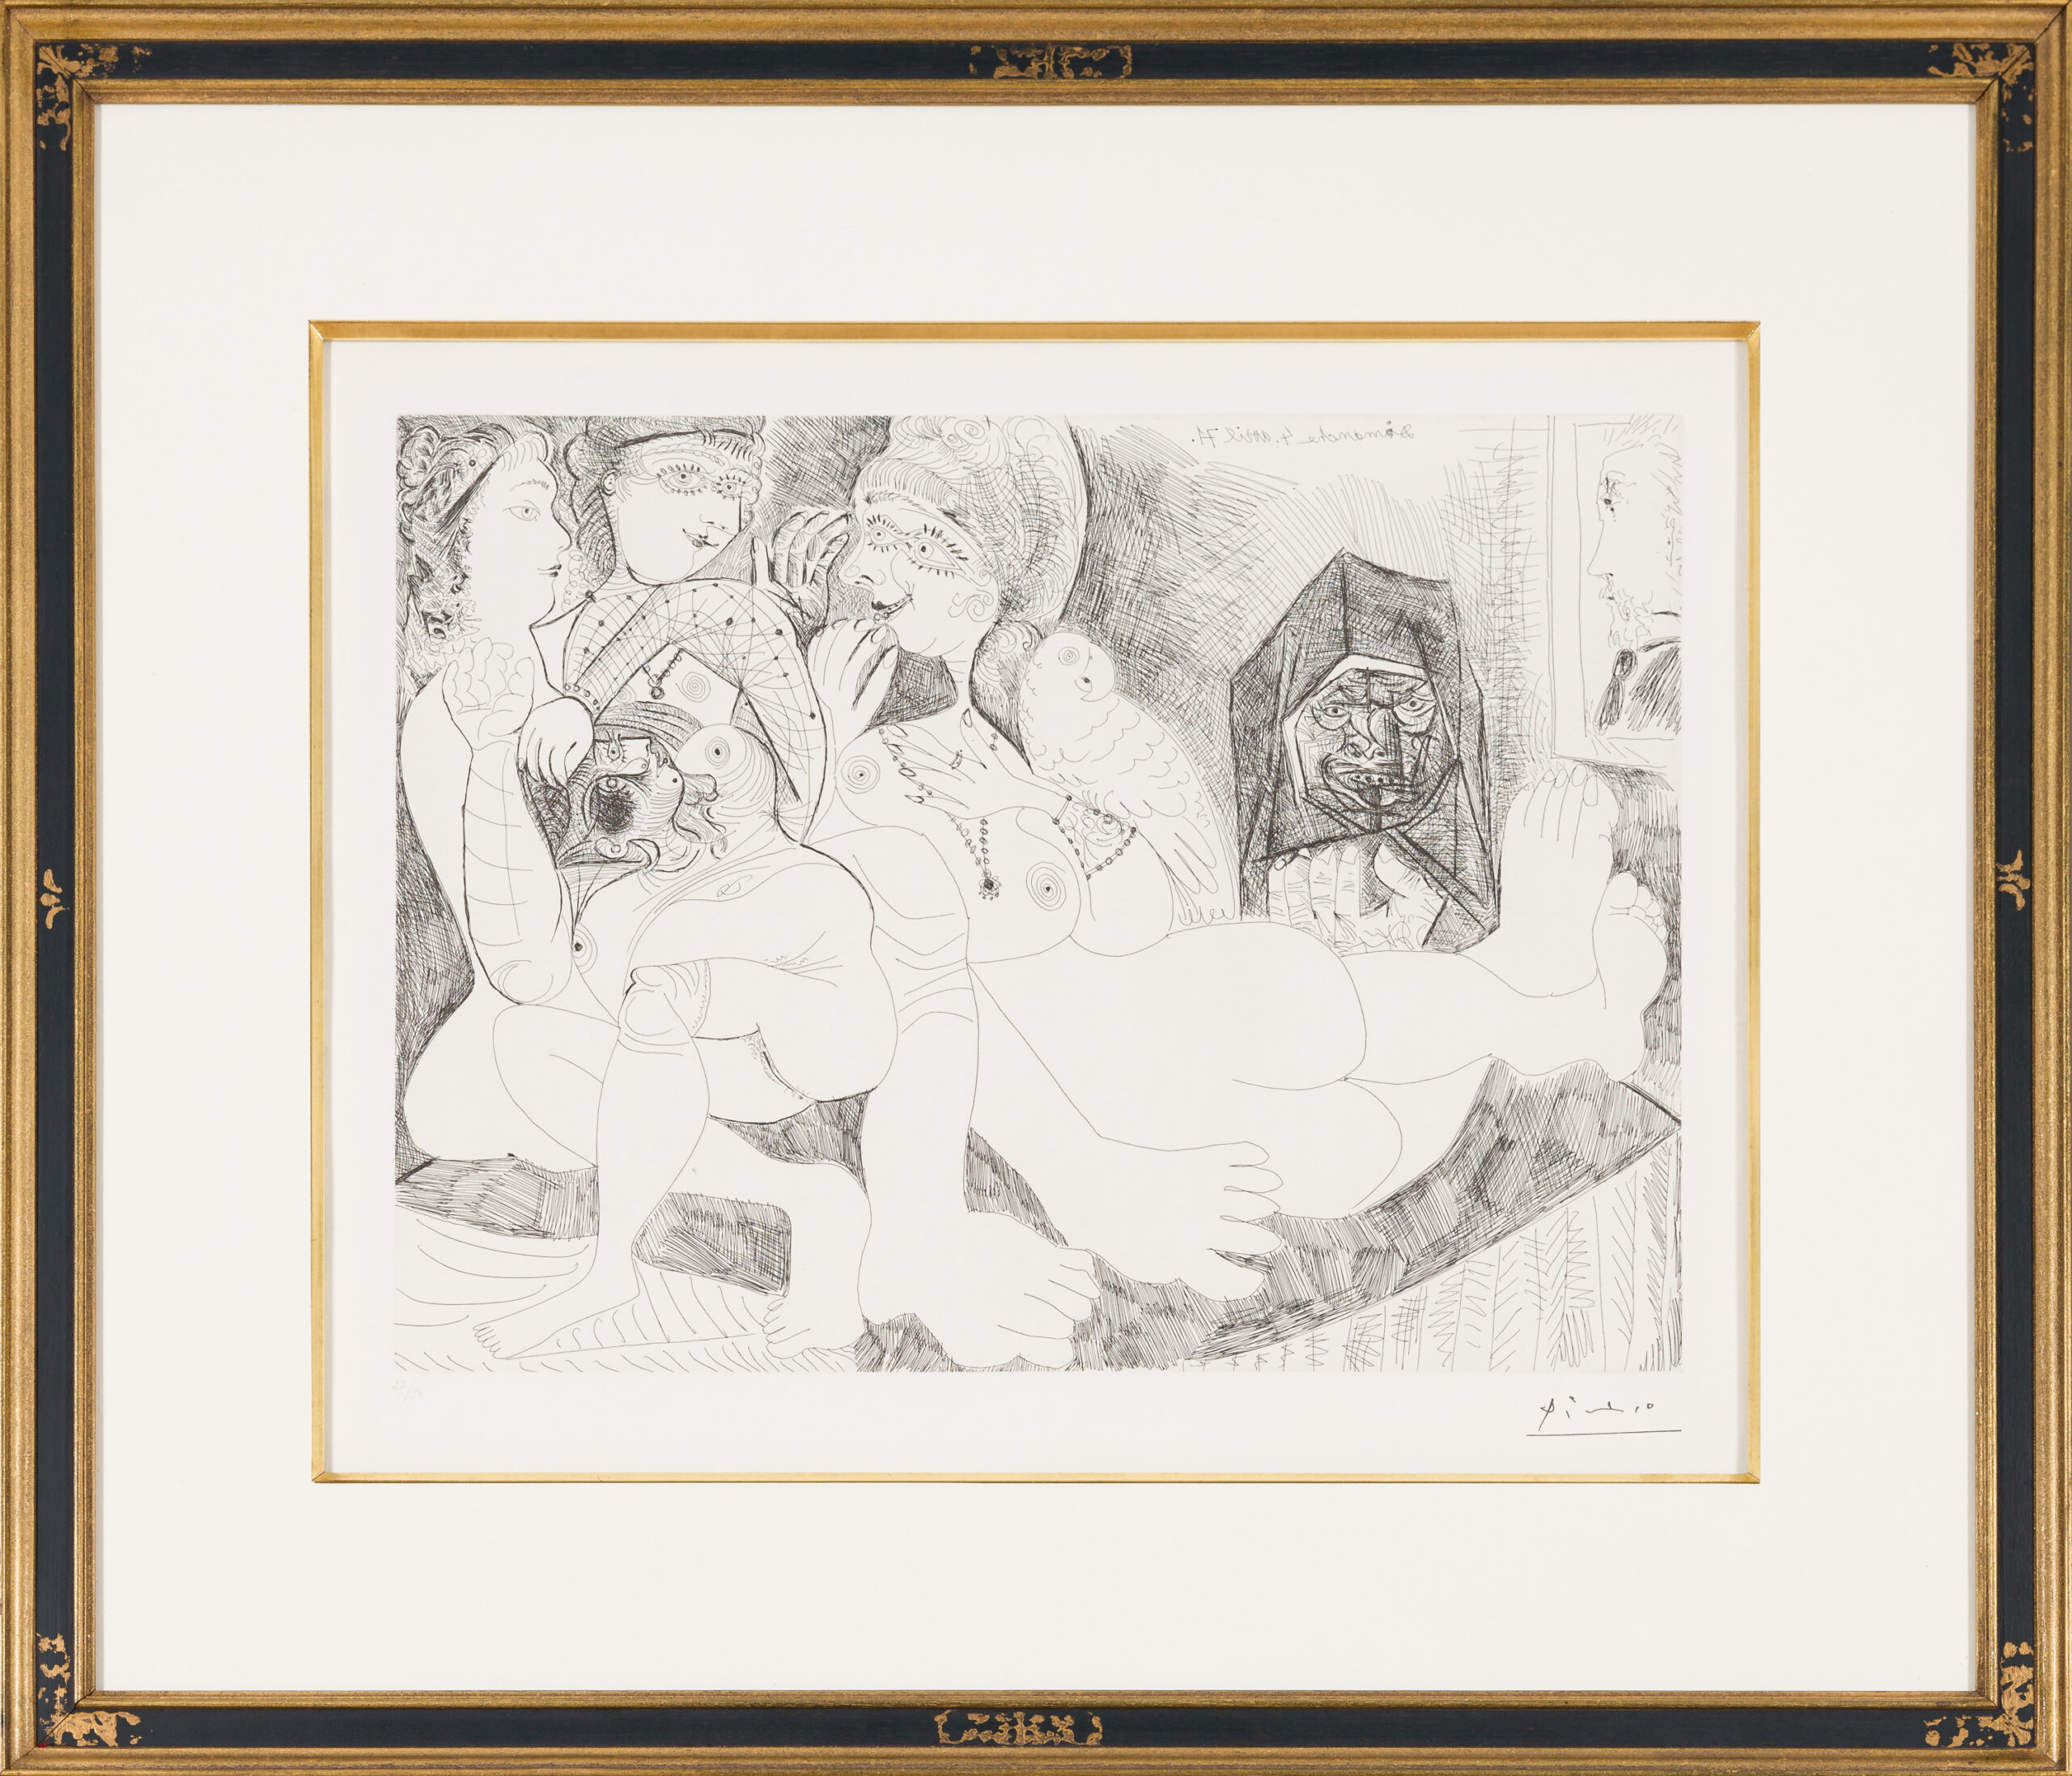  frei-Maison close. Bavardages, avec perroque, Célestine, et le portrait de Degas